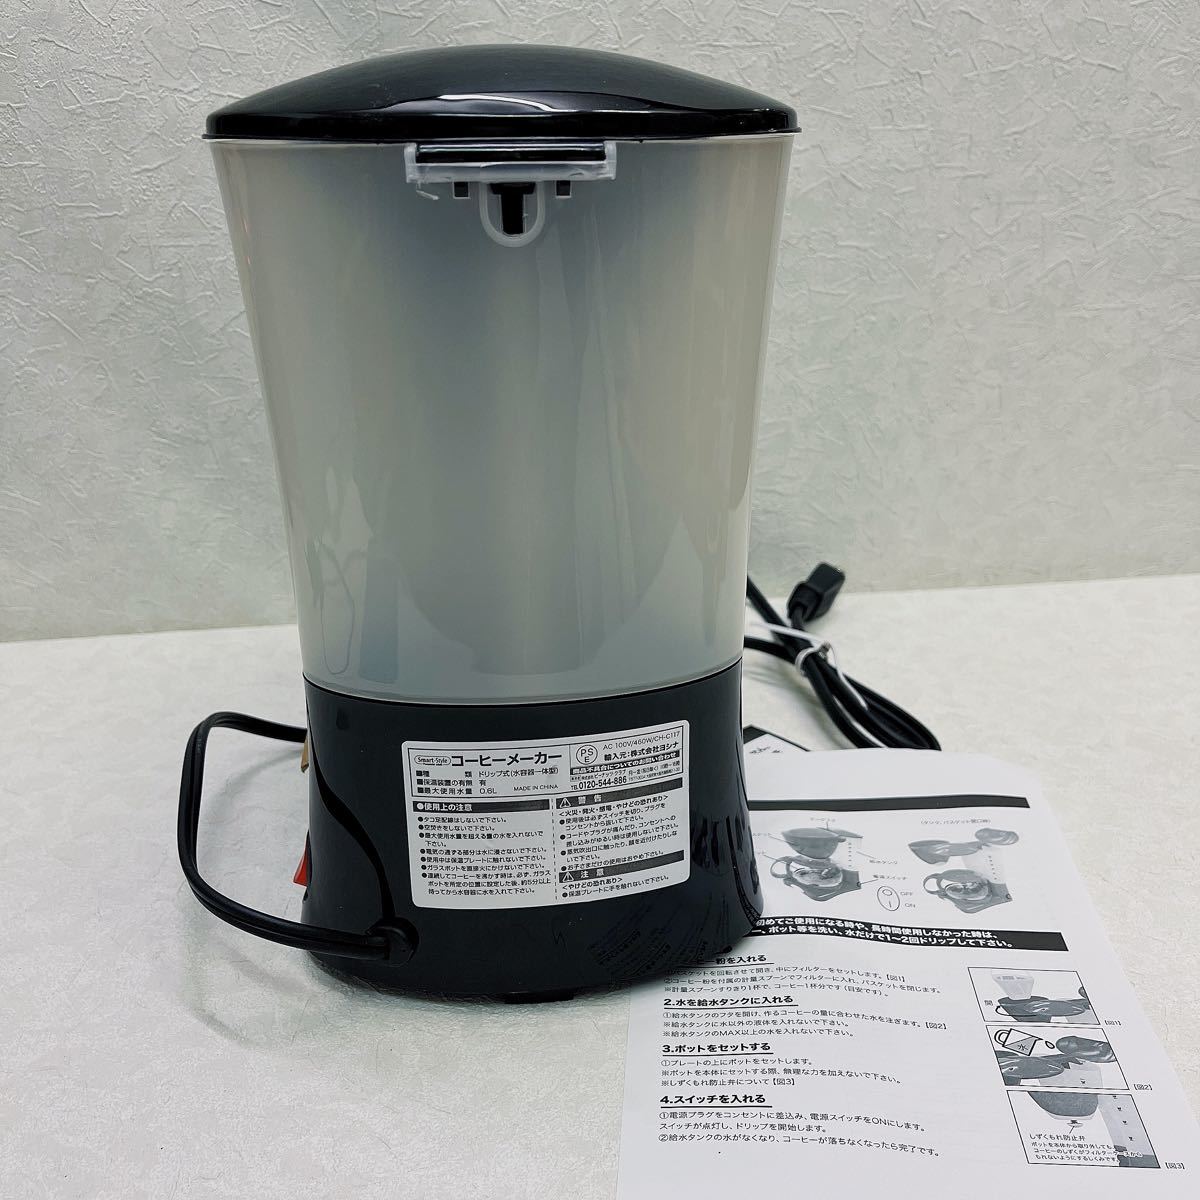 未使用長期保管品 Smart-Style ドリップ式コーヒーメーカー 保温機能付き 最大容量600ml ブラック 説明書/箱付き 